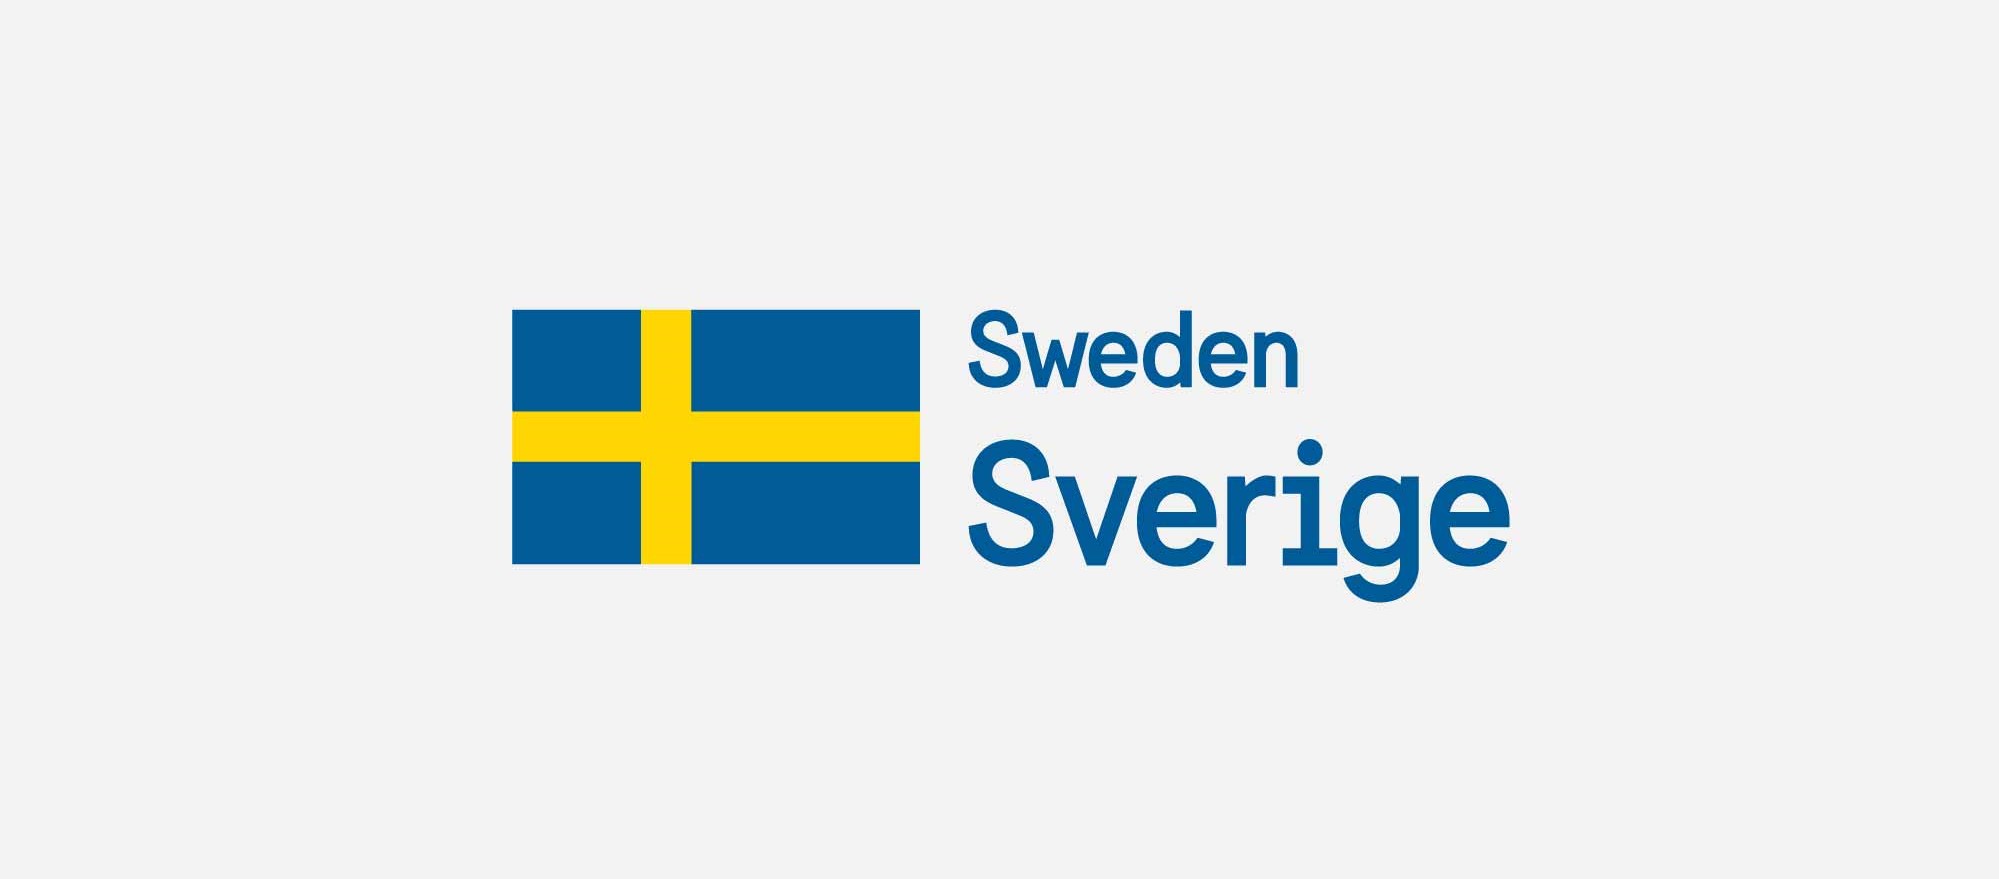 sweden.se